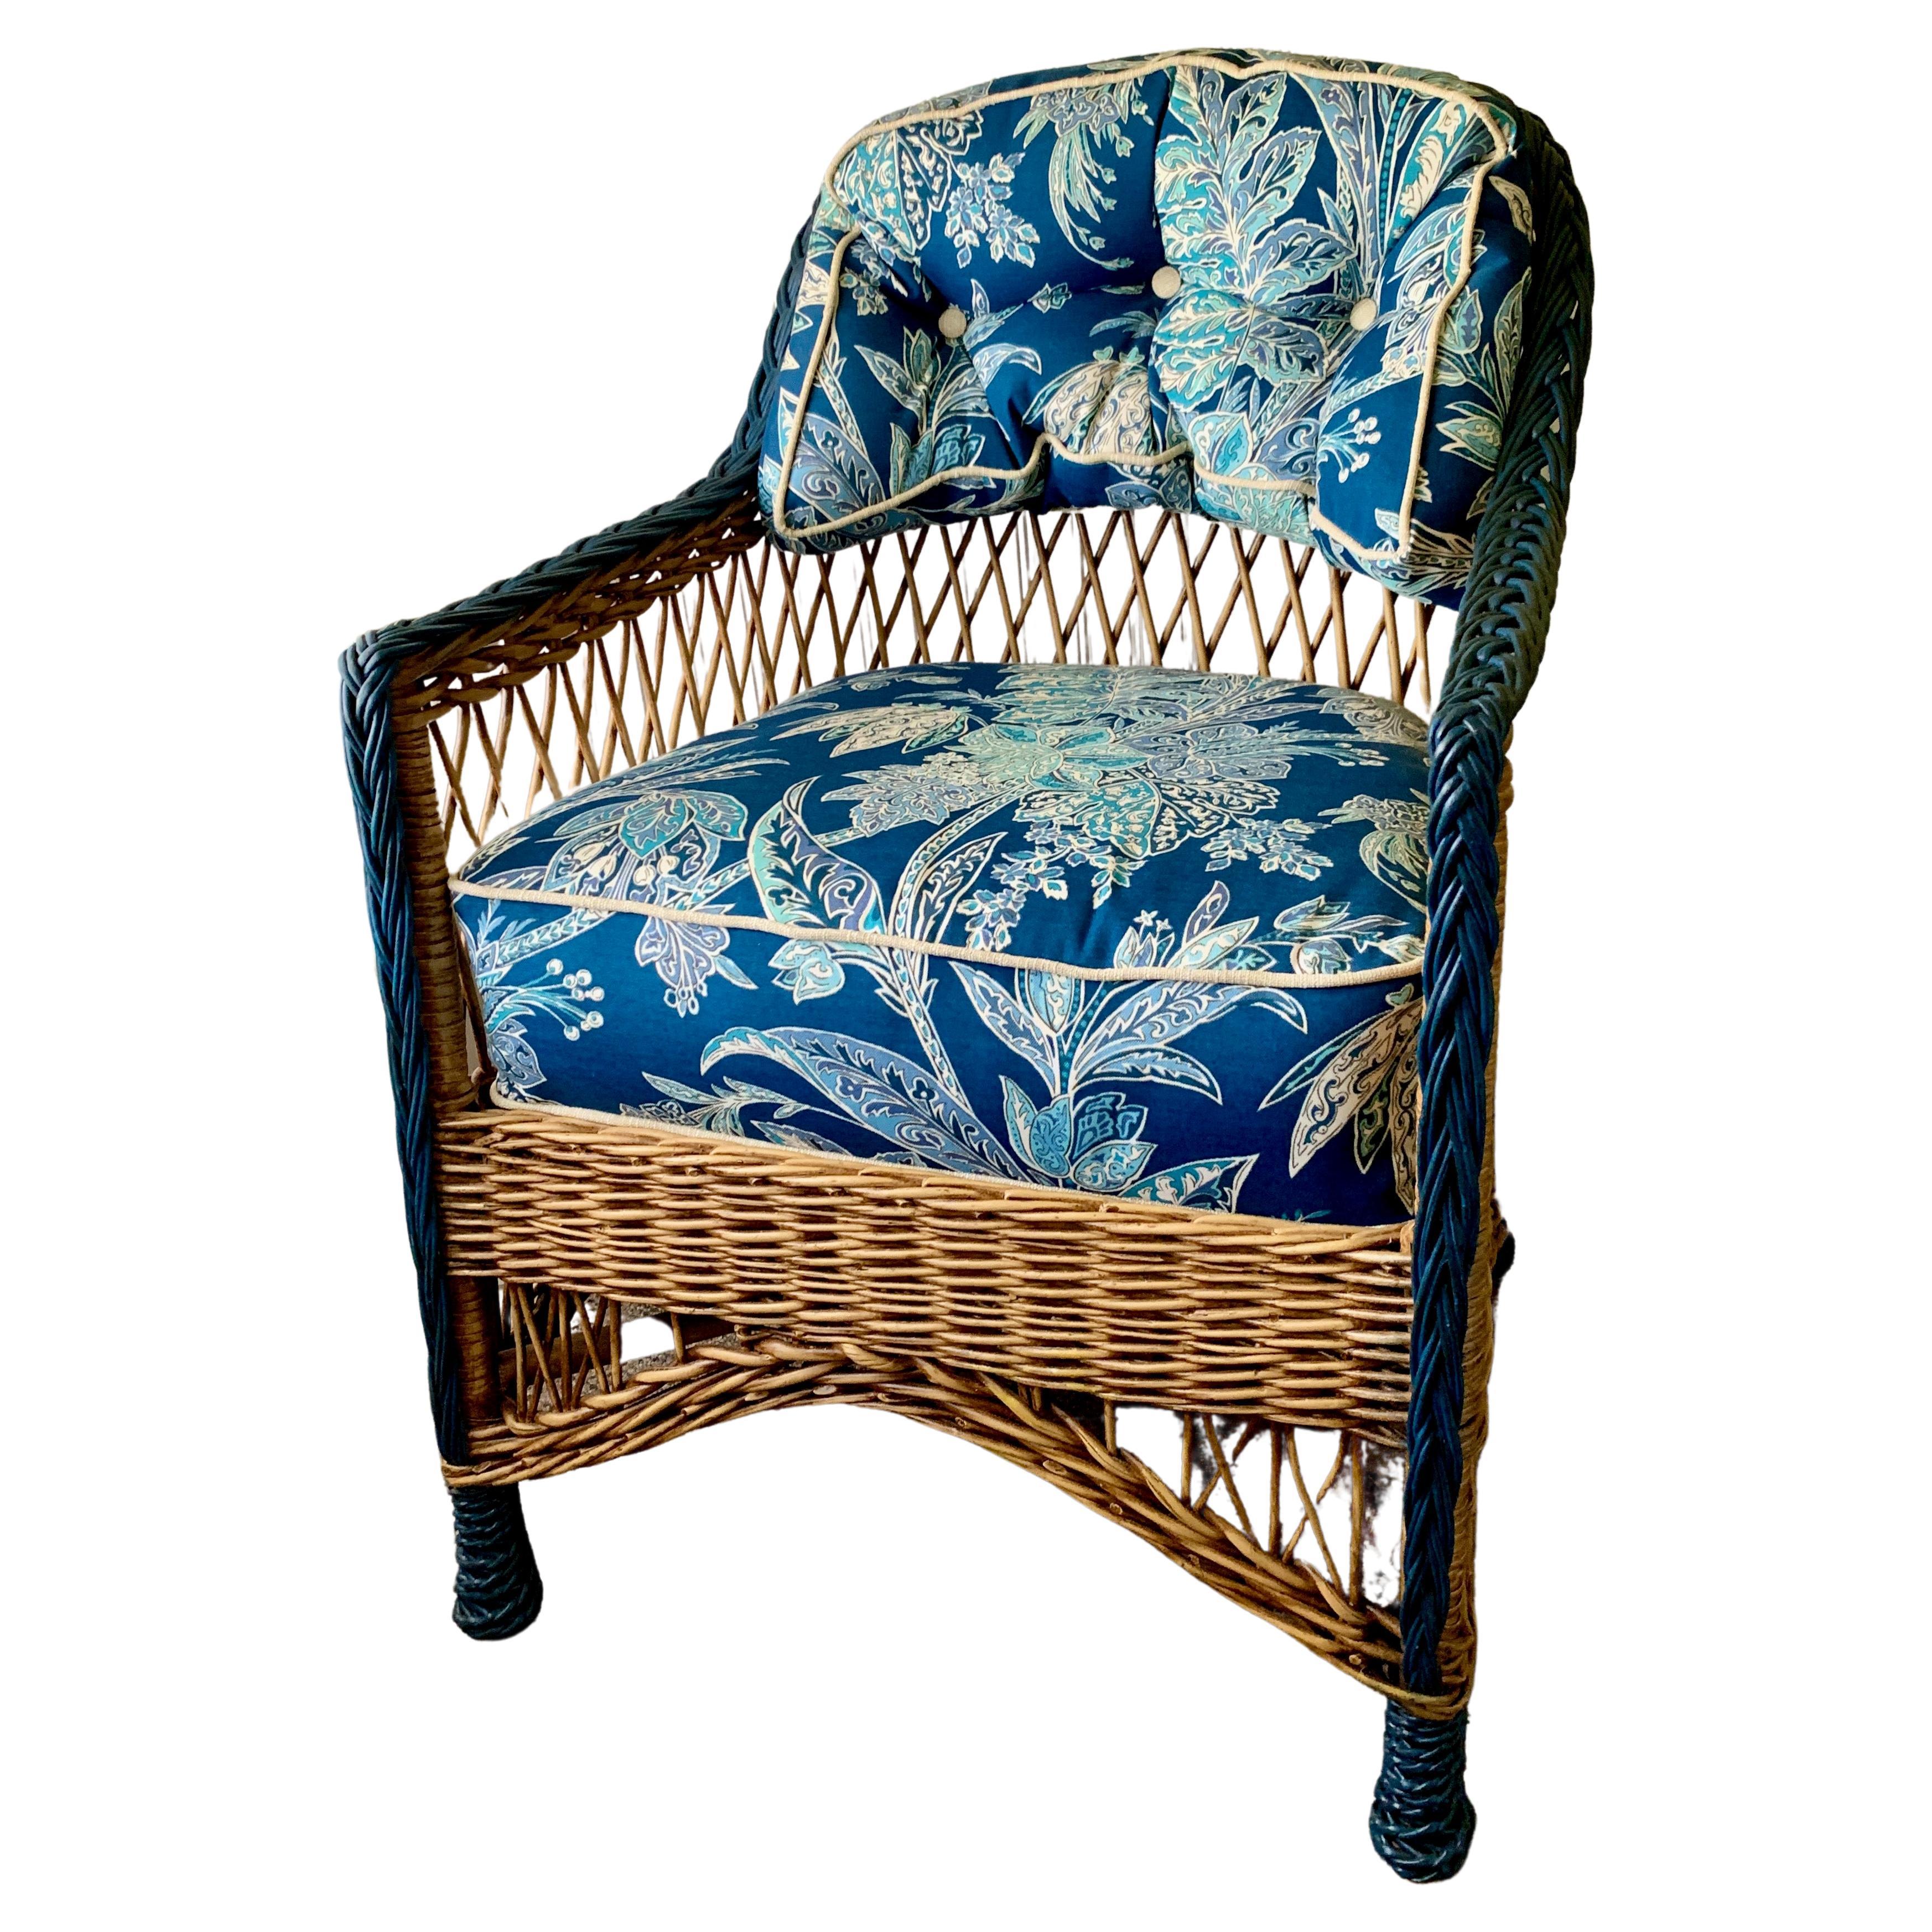 Ein schöner, kleiner Sessel im Bar Harbor-Stil aus Korbgeflecht in natürlicher Ausführung mit blauen Akzenten. Dies ist eine sehr bequeme und robuste alle geflochtenen Sessel höchstwahrscheinlich in Gardner Massachusetts in den sehr frühen 20. C.